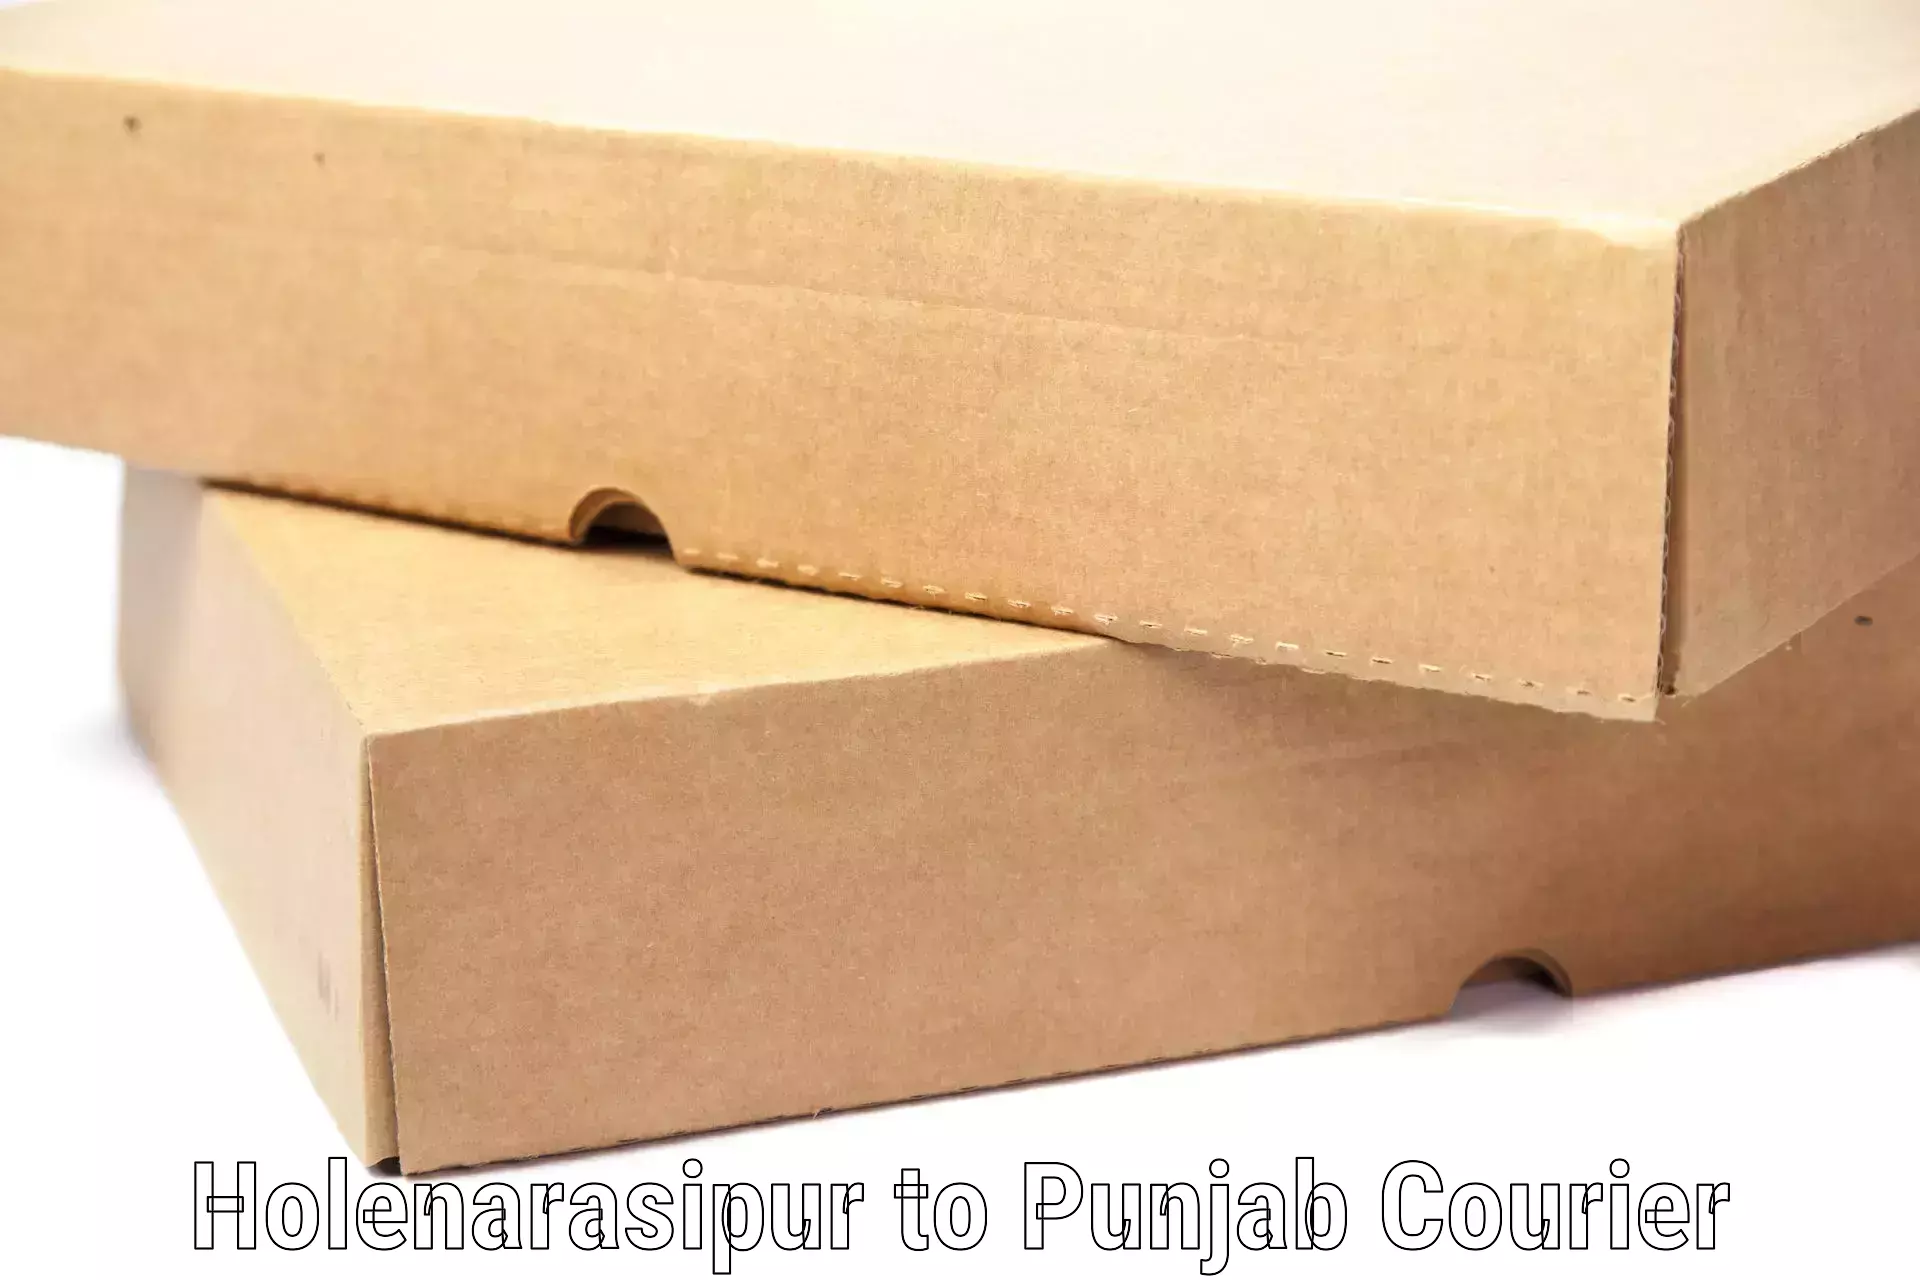 Regional luggage transport Holenarasipur to Punjab